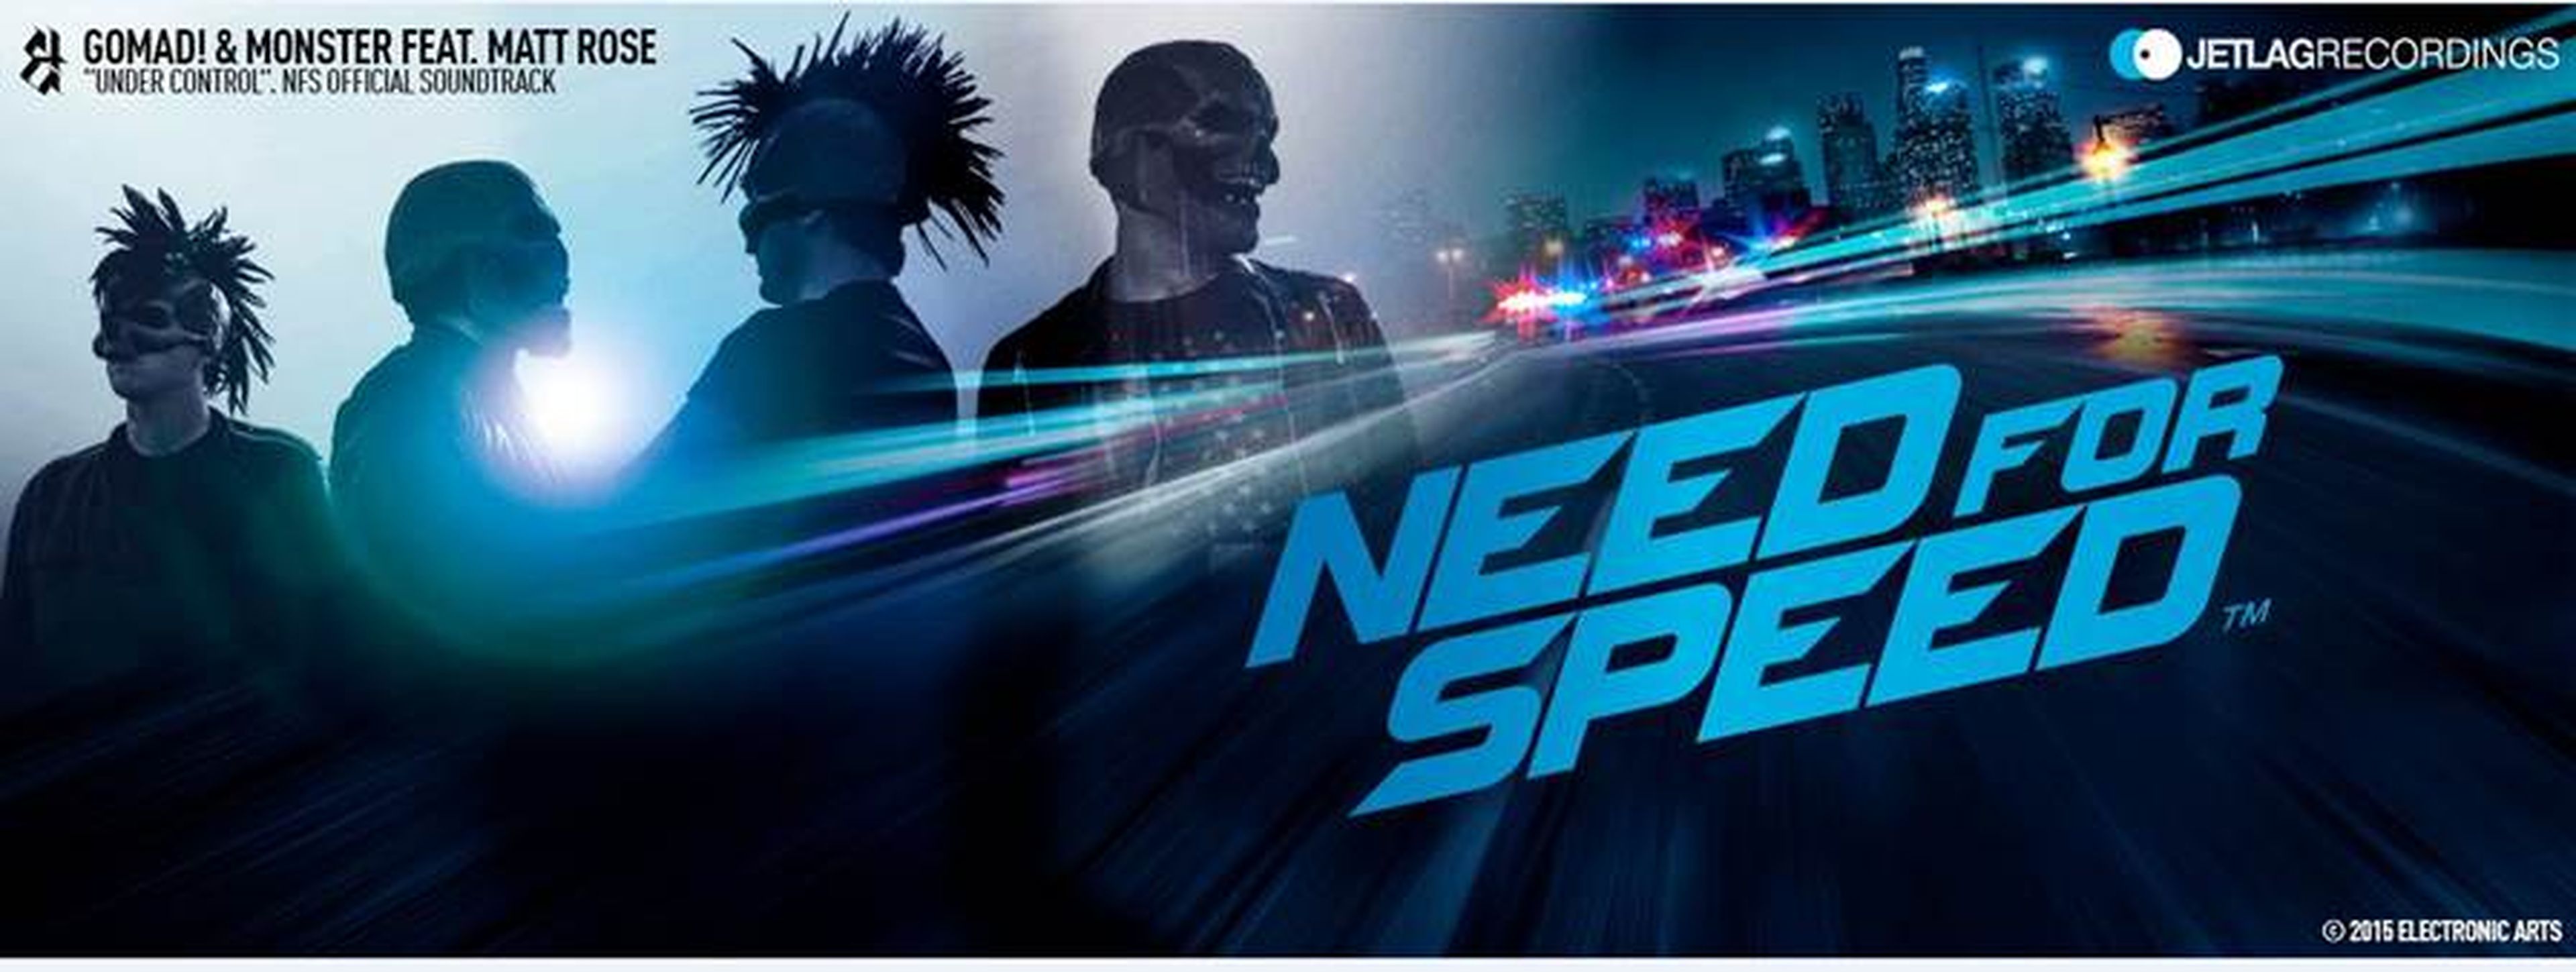 El tema 'Under Control' de GoMad! & Monster estará en la BSO del nuevo Need for Speed